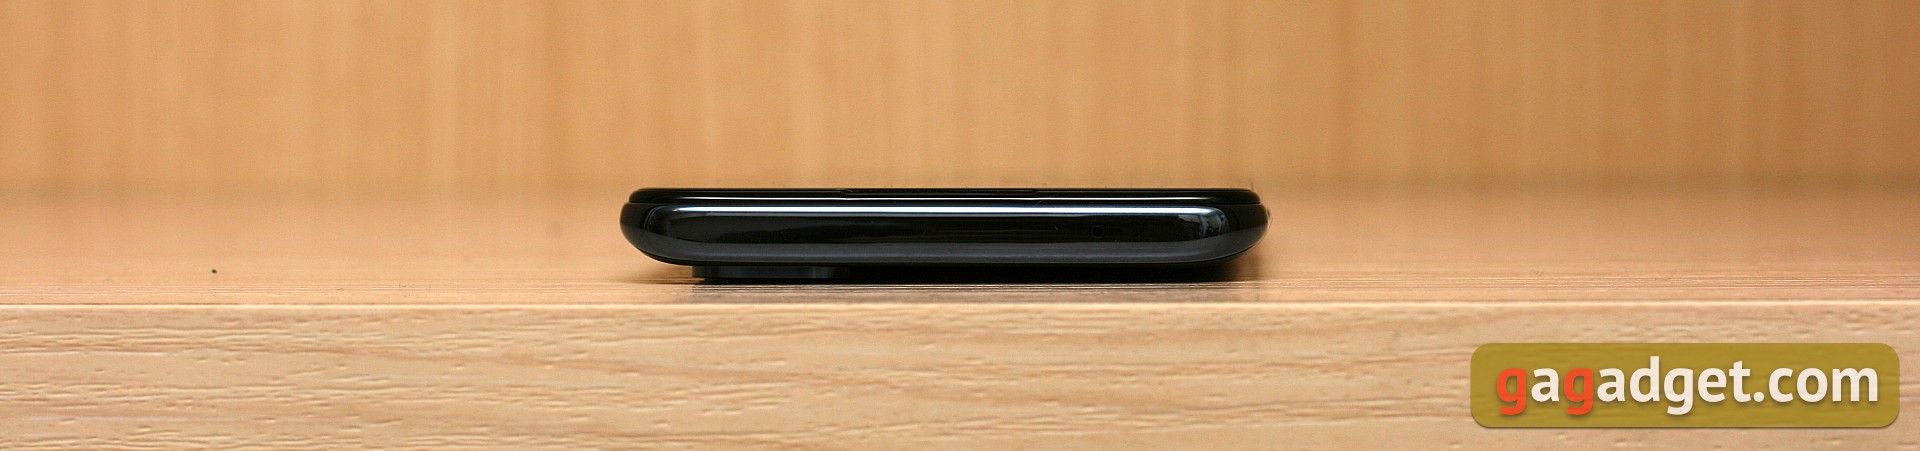 Обзор OnePlus Nord N10 5G: средний класс создателей «убийц флагманов»-7